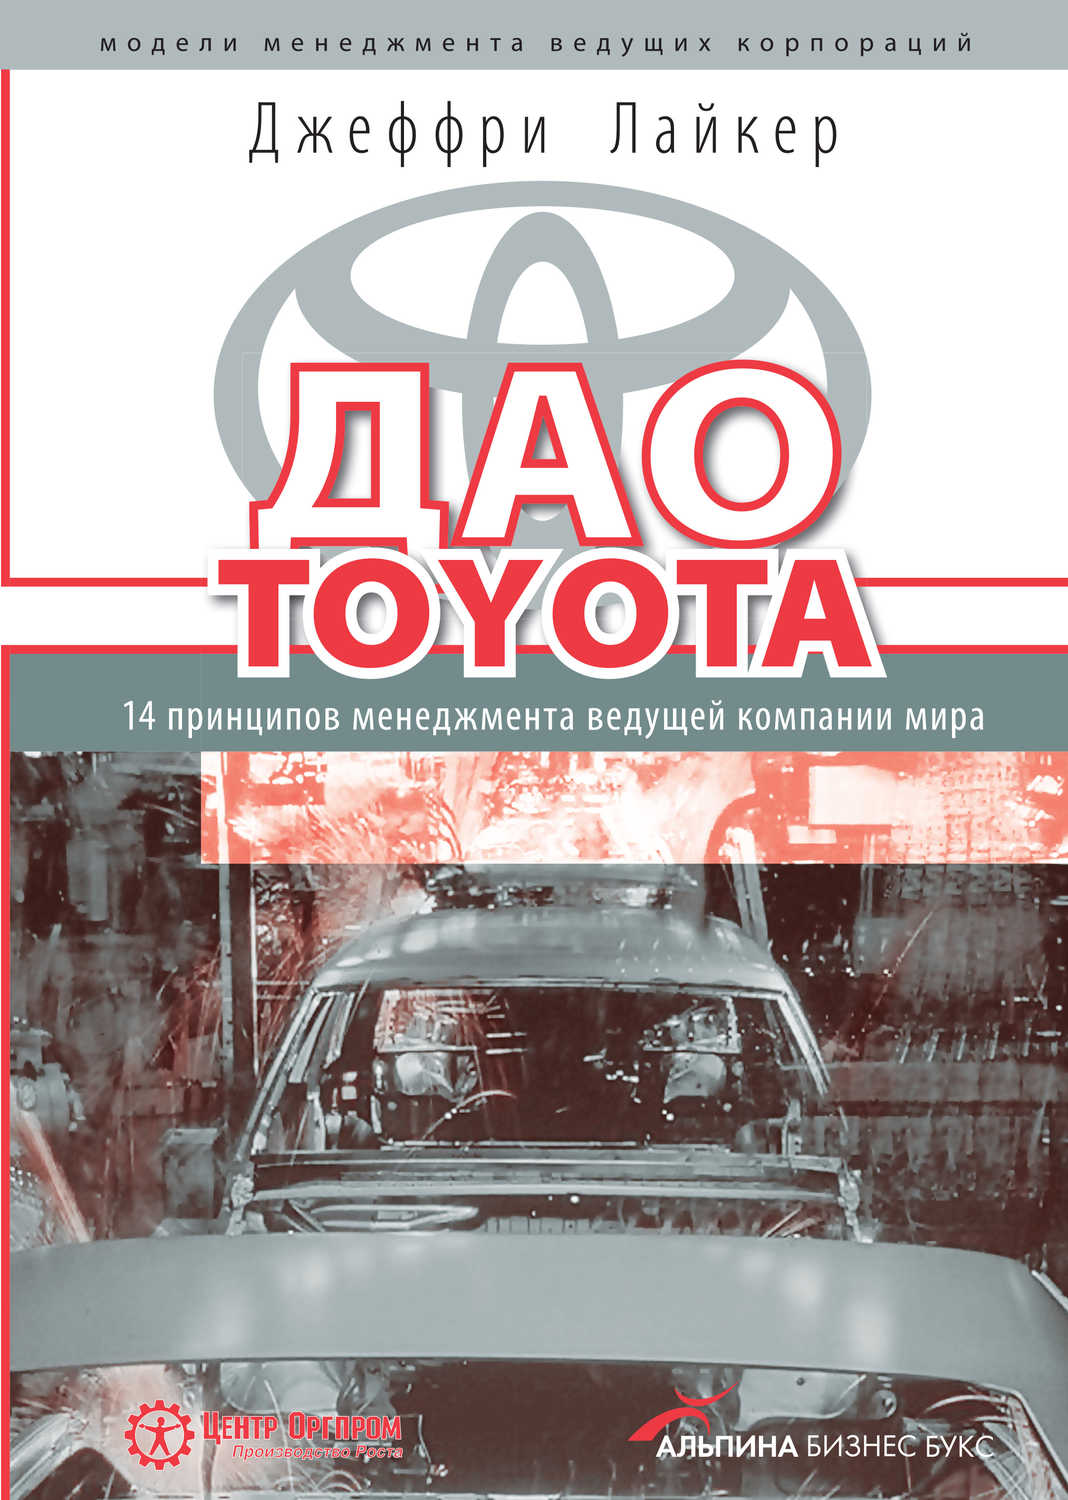 Джеффри Лайкер - «Дао Toyota: 14 принципов менеджмента ведущей компании мира»